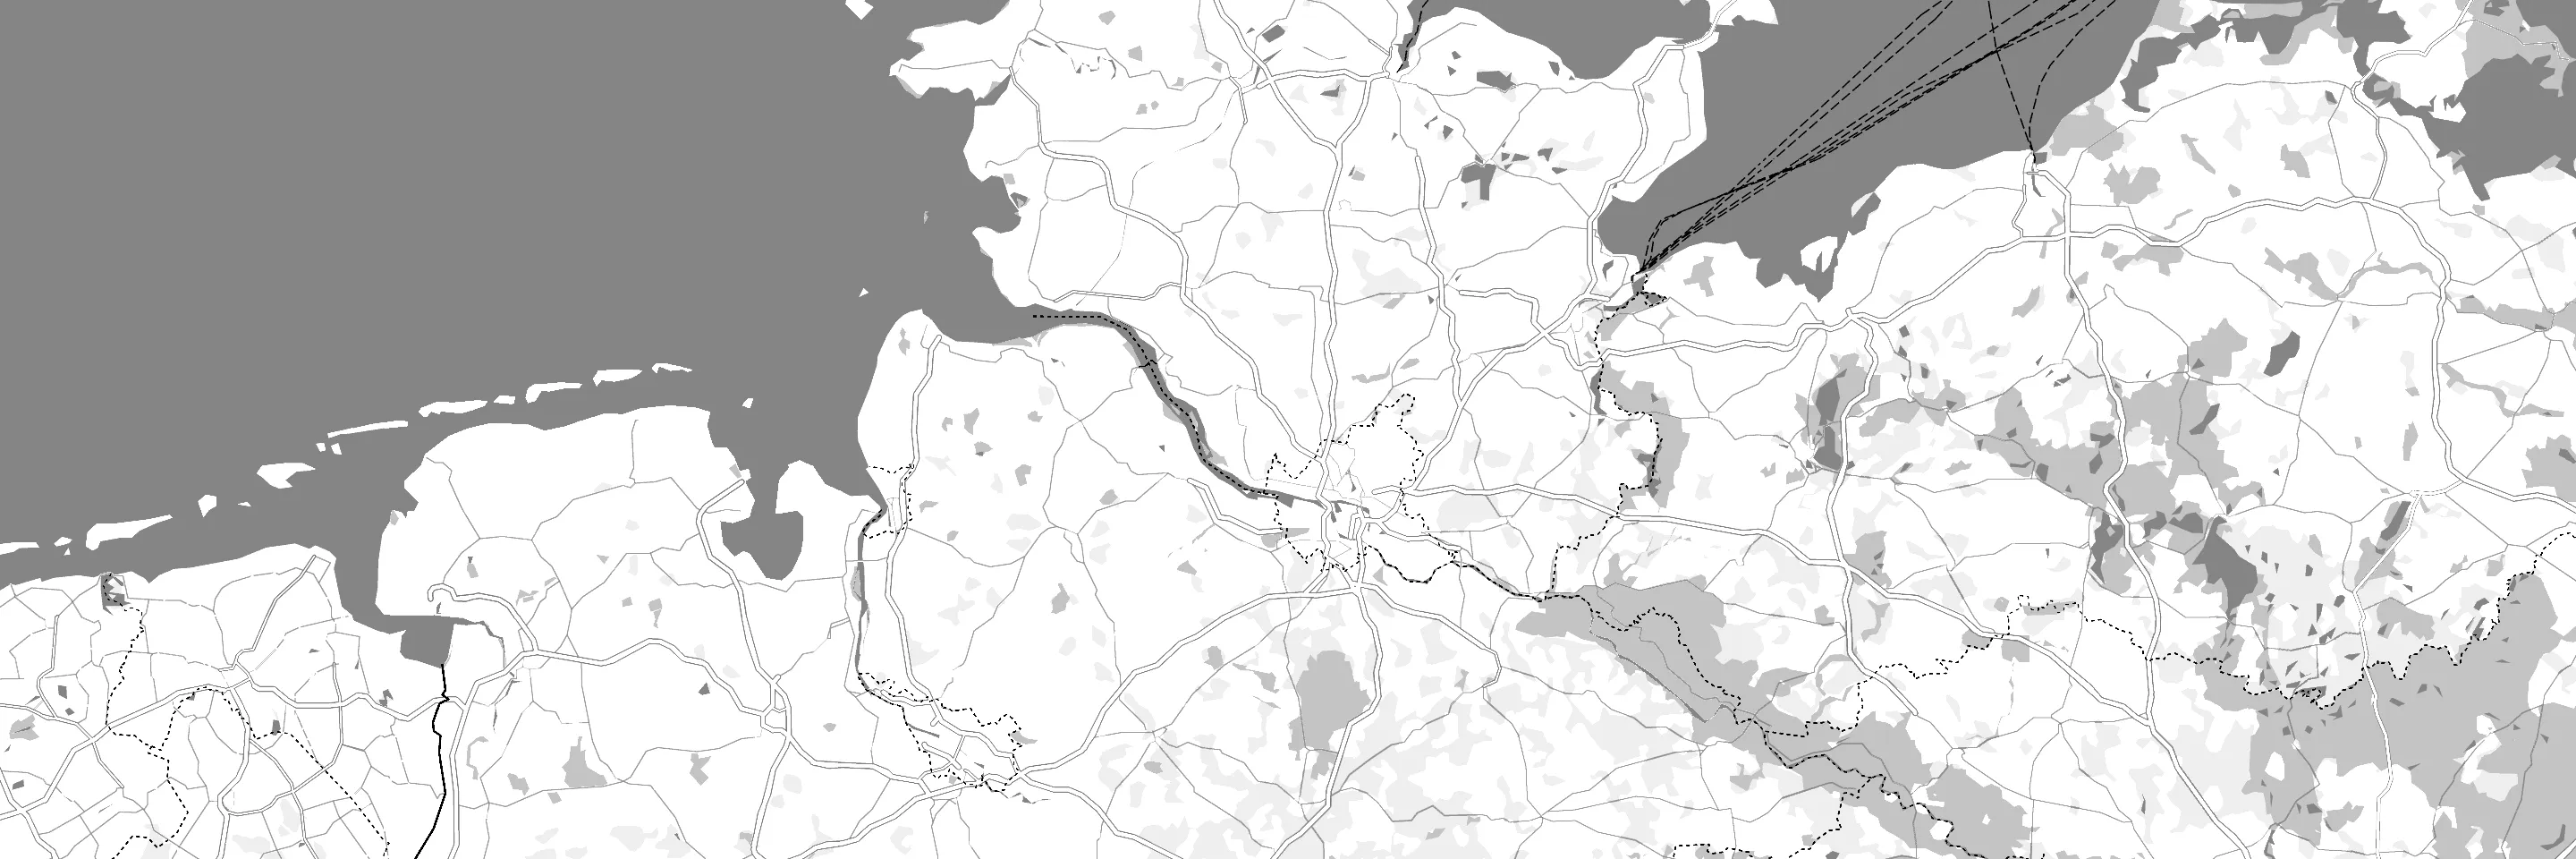 Online-Landkartenausschnitt aus dem Norden von Deutschland mit Hamburg, Bremen und Hohenwestedt